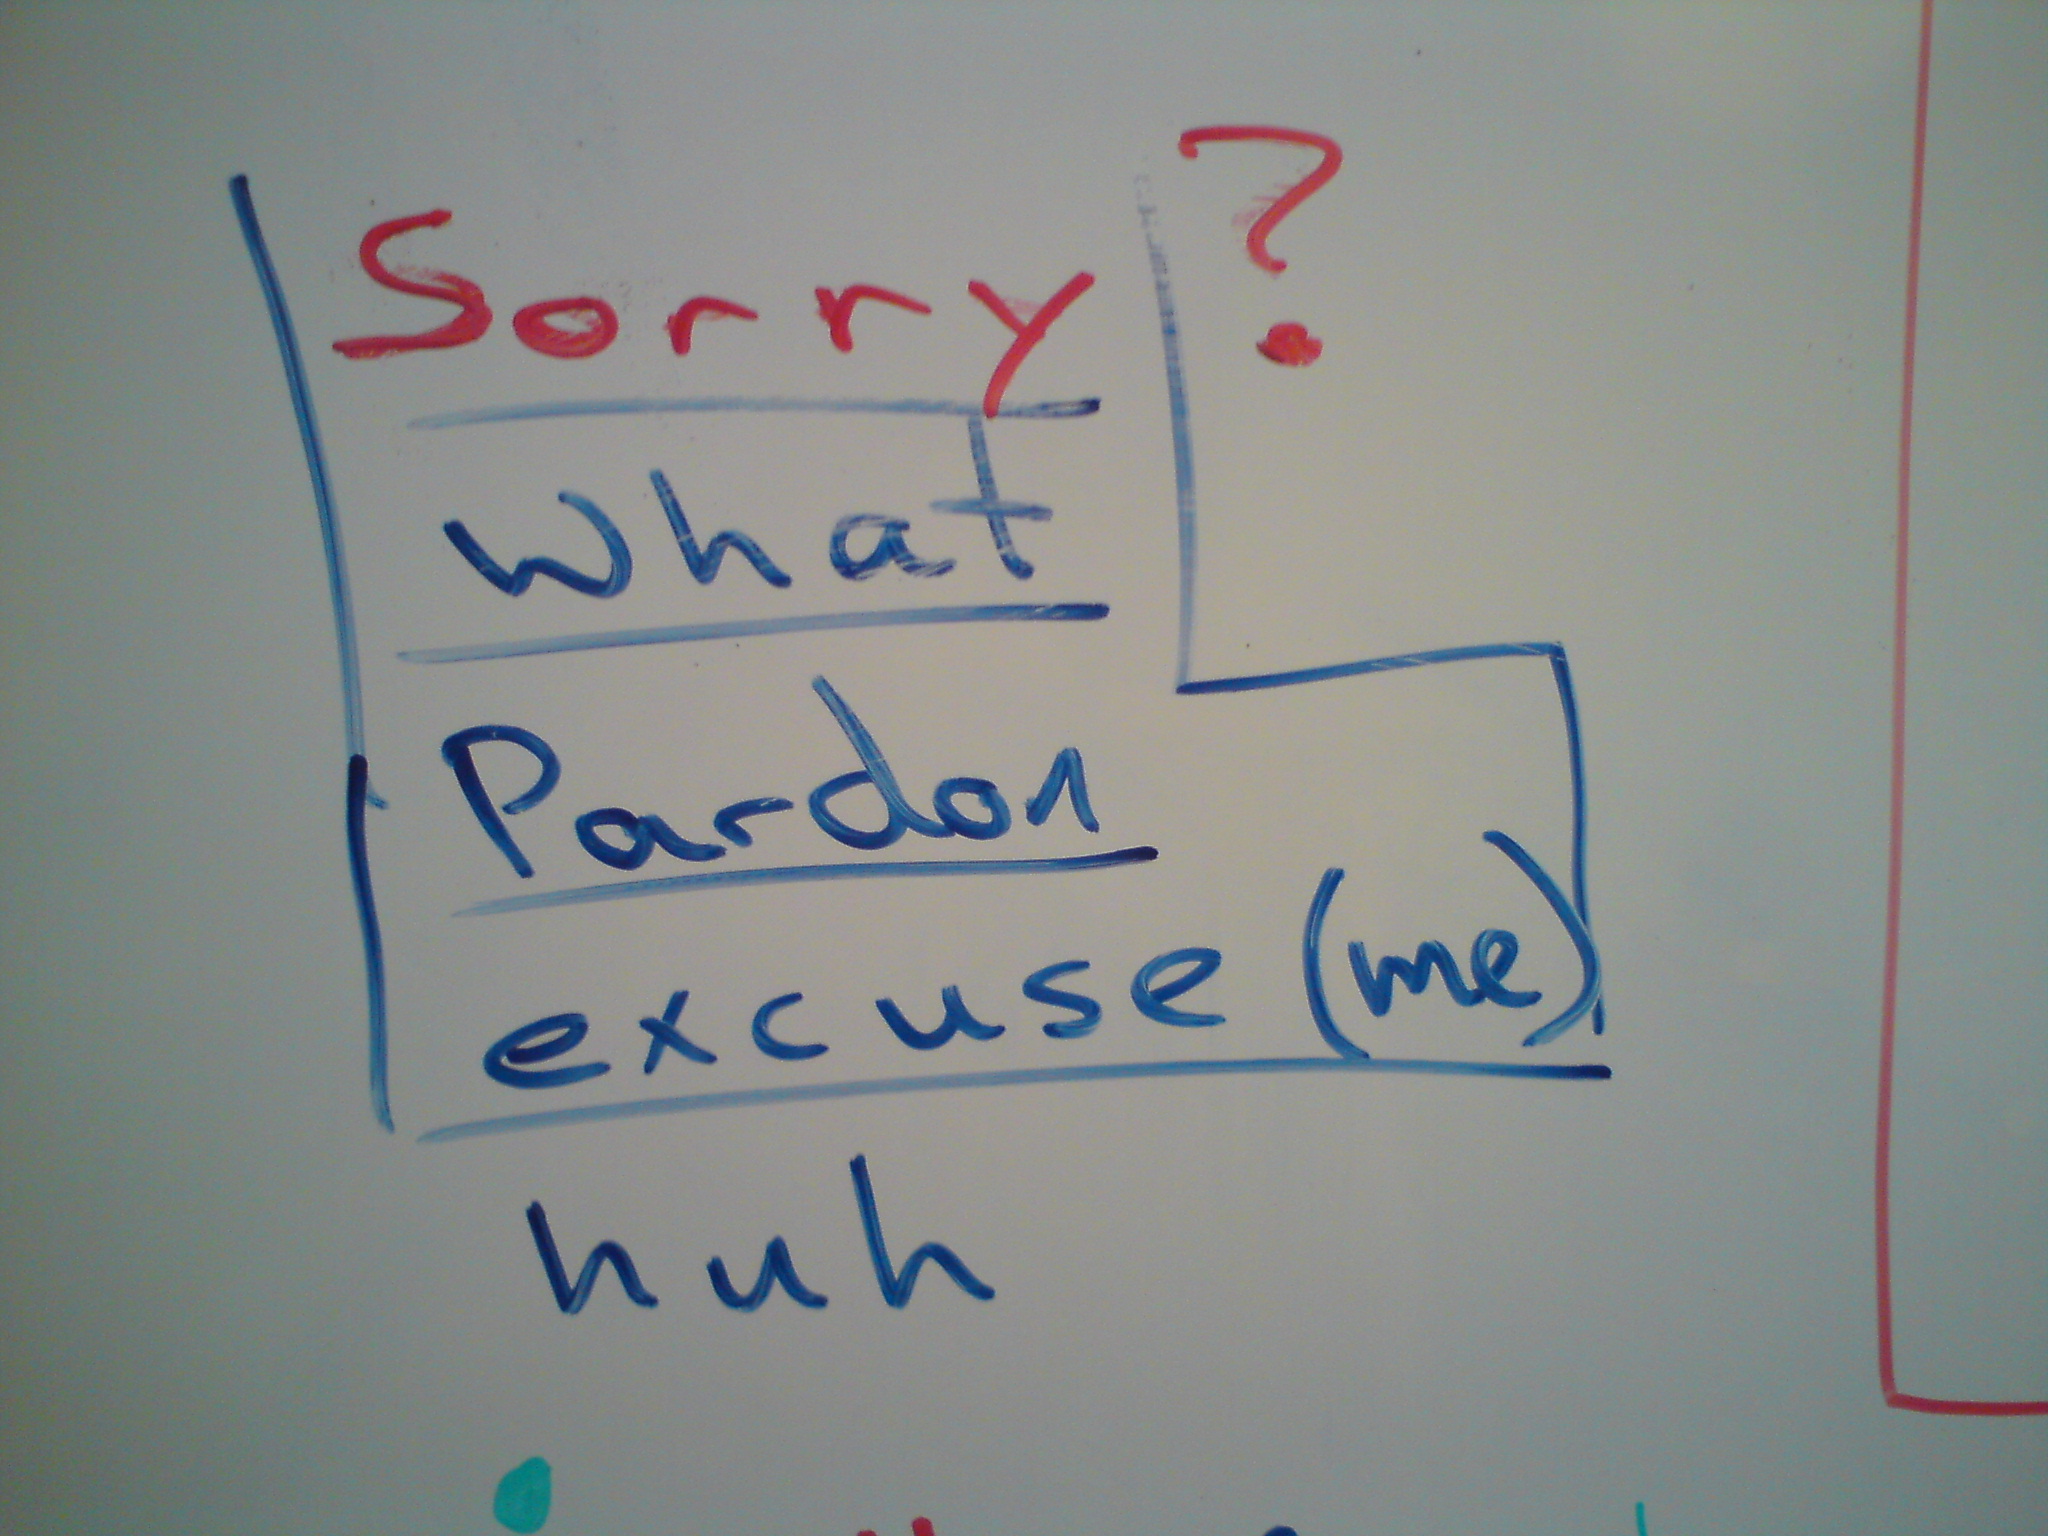 "Sorry?" - whiteboard